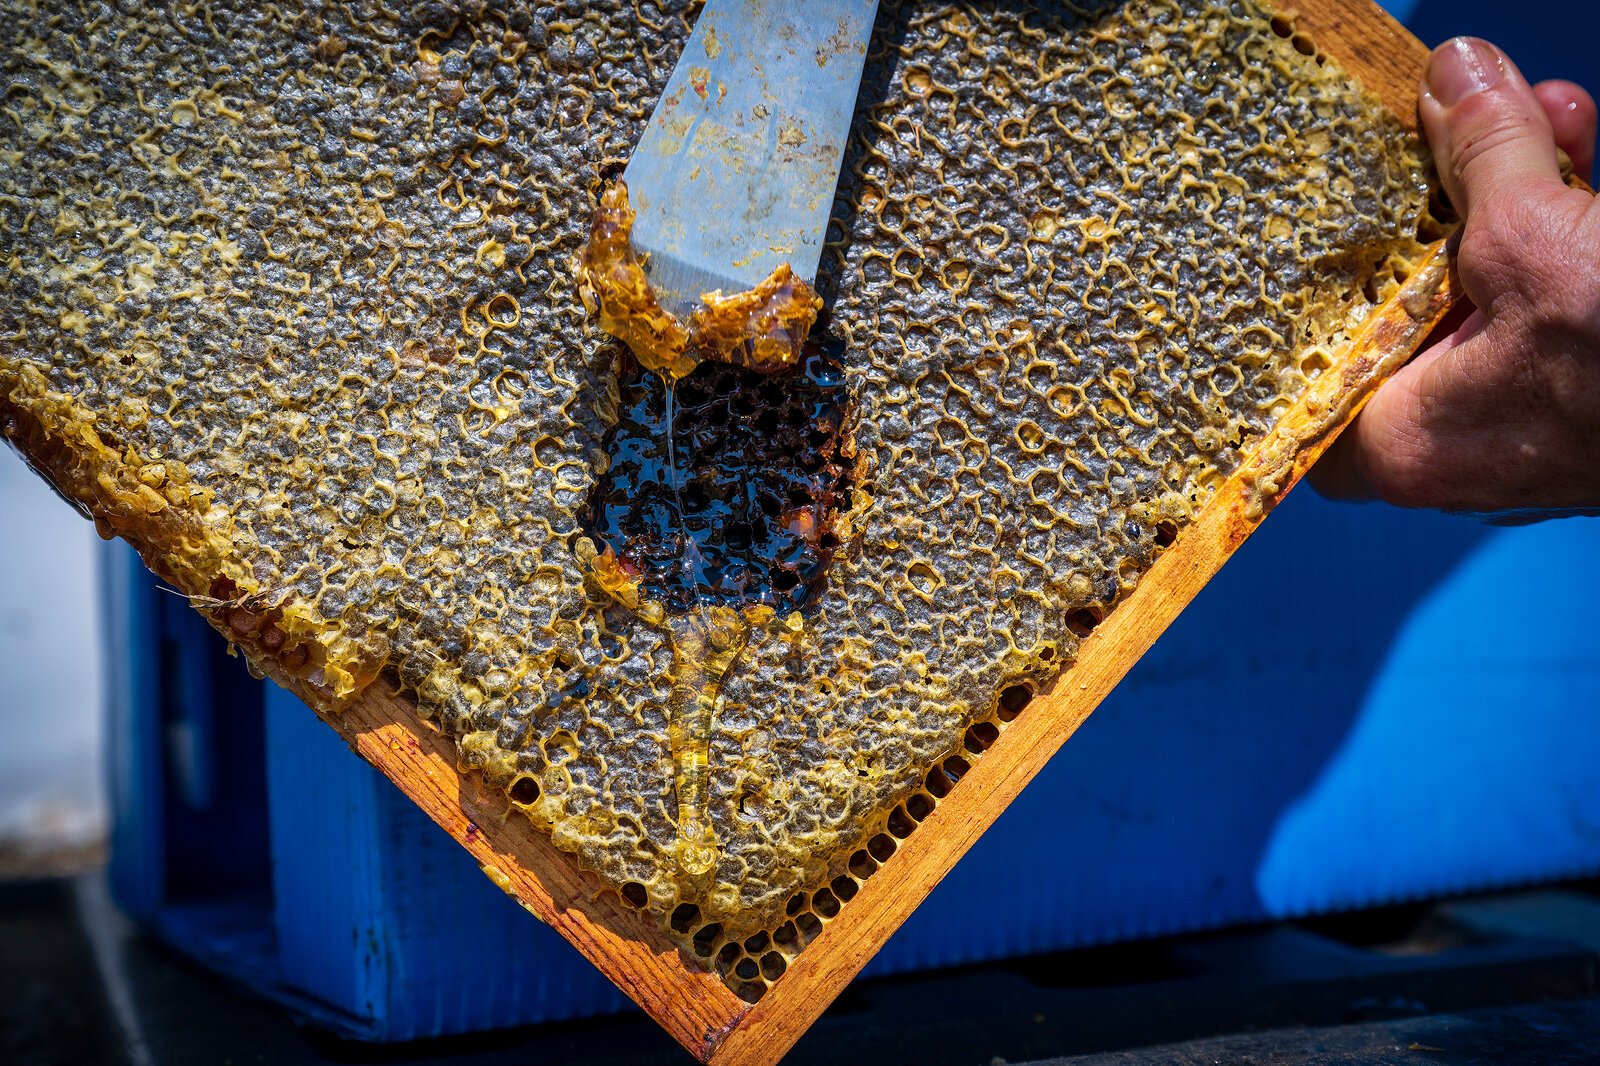 A bee hive frame at The Farm at St. Joe.